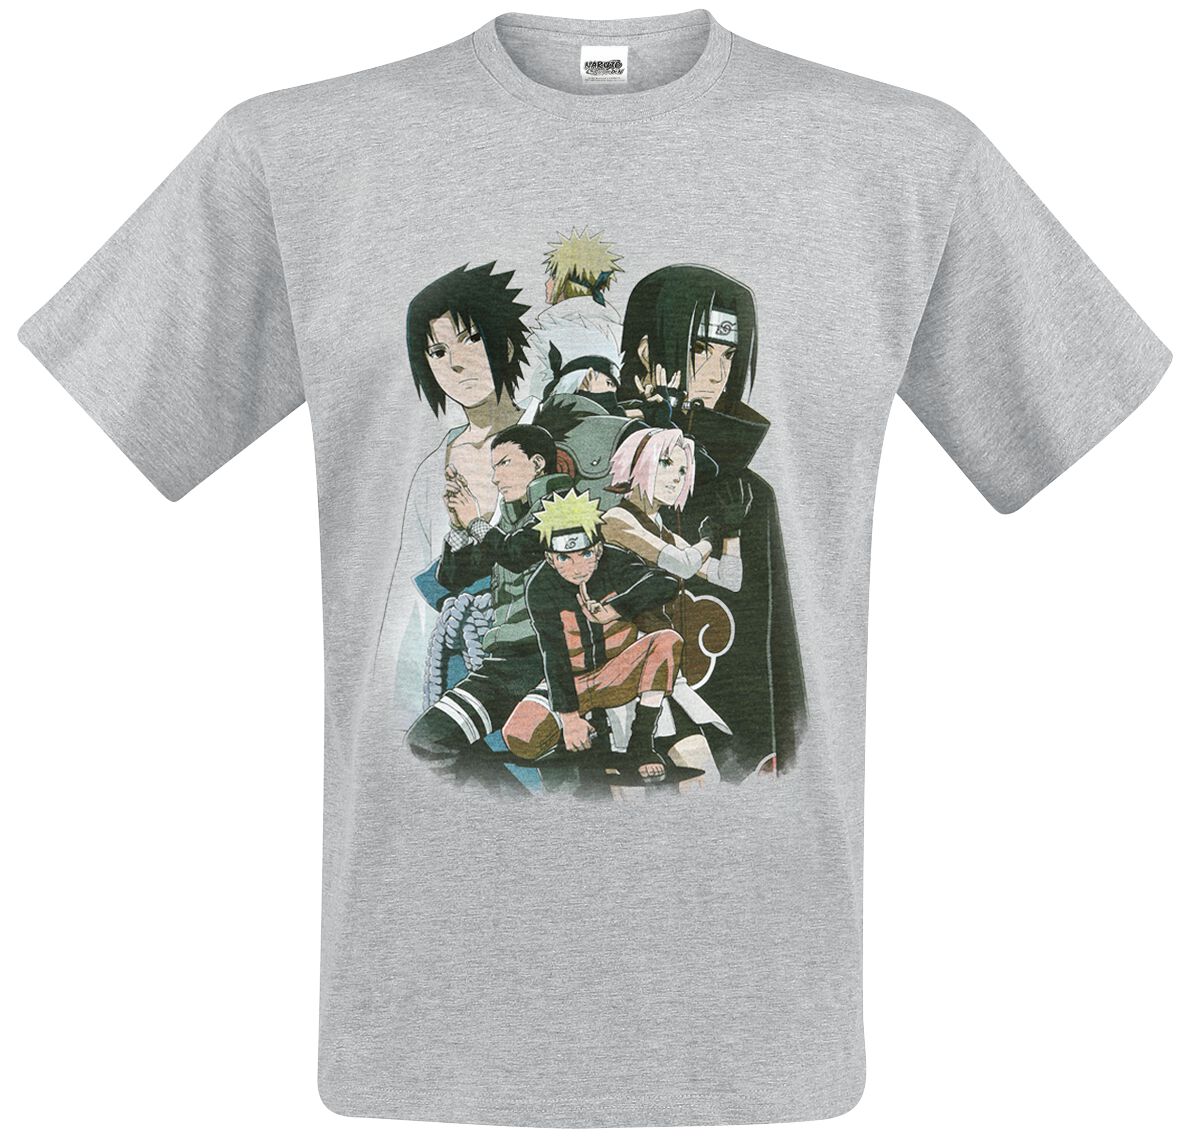 Naruto - Anime T-Shirt - Shippuden - Group - M bis XL - für Männer - Größe M - grau meliert  - Lizenzierter Fanartikel